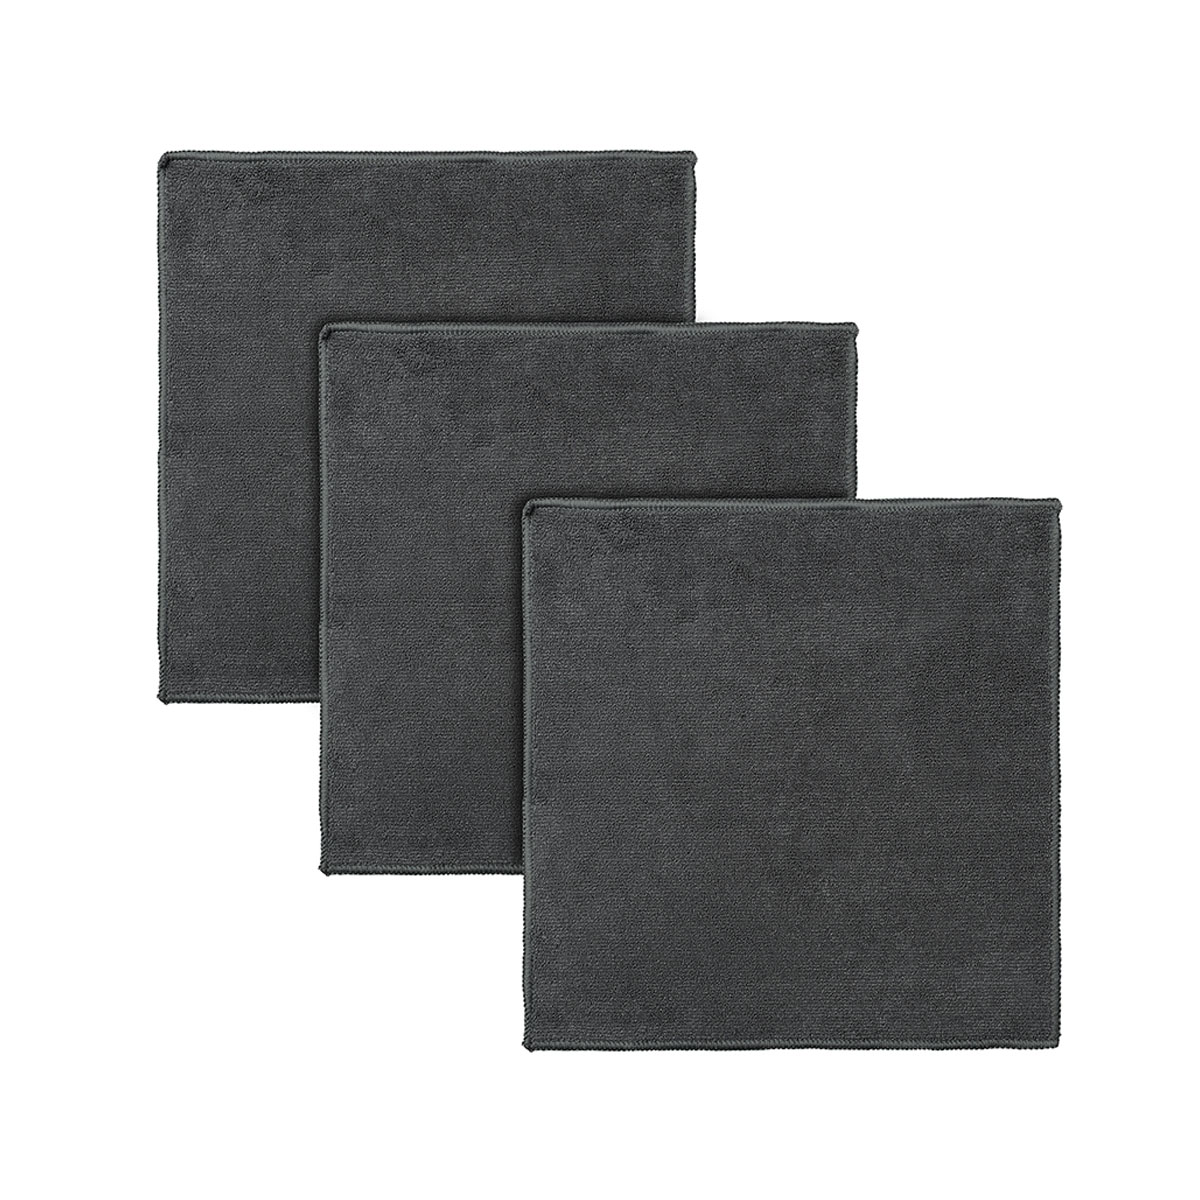 Набор салфеток из микрофибры Smart Solutions Cozy Clean 3шт, цвет темно-серый одеяло из микрофибры 2 сп лебяжий пух